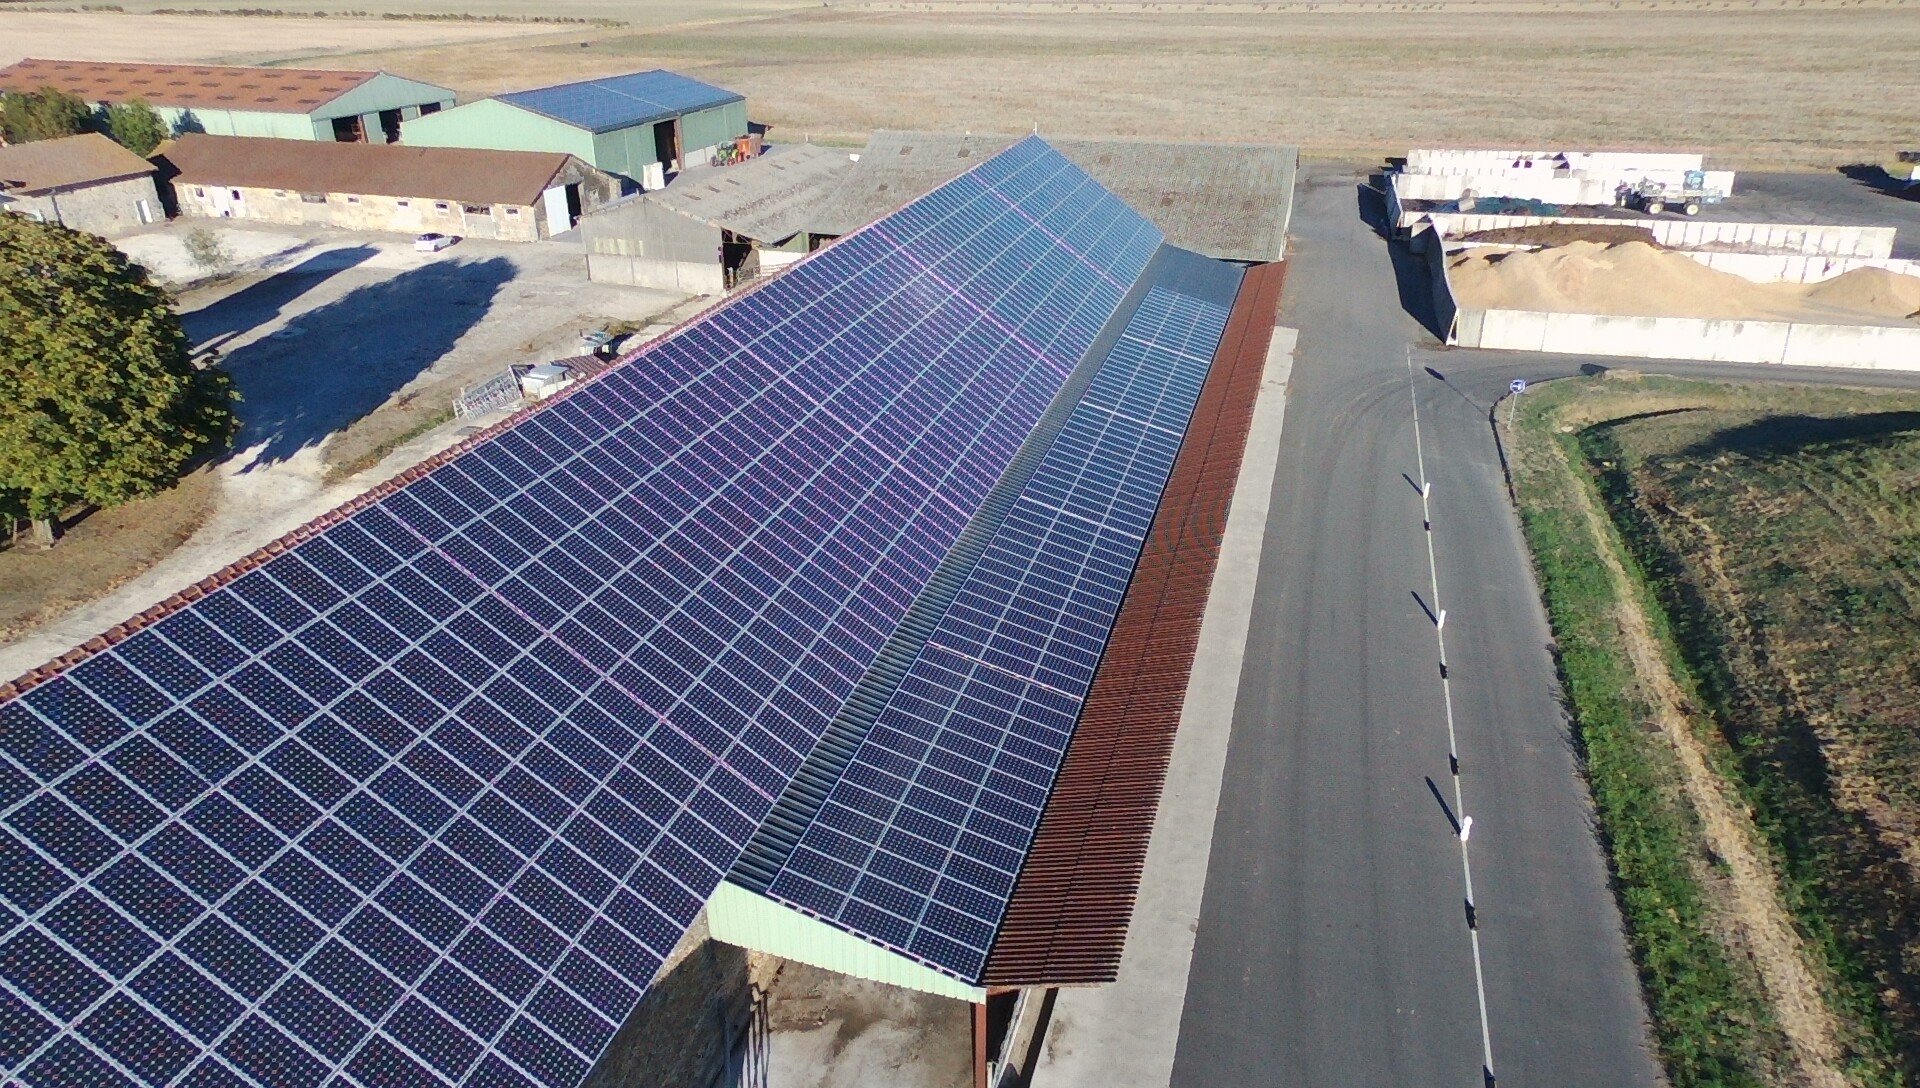 Lire la suite à propos de l’article Energie : toitures photovoltaïques